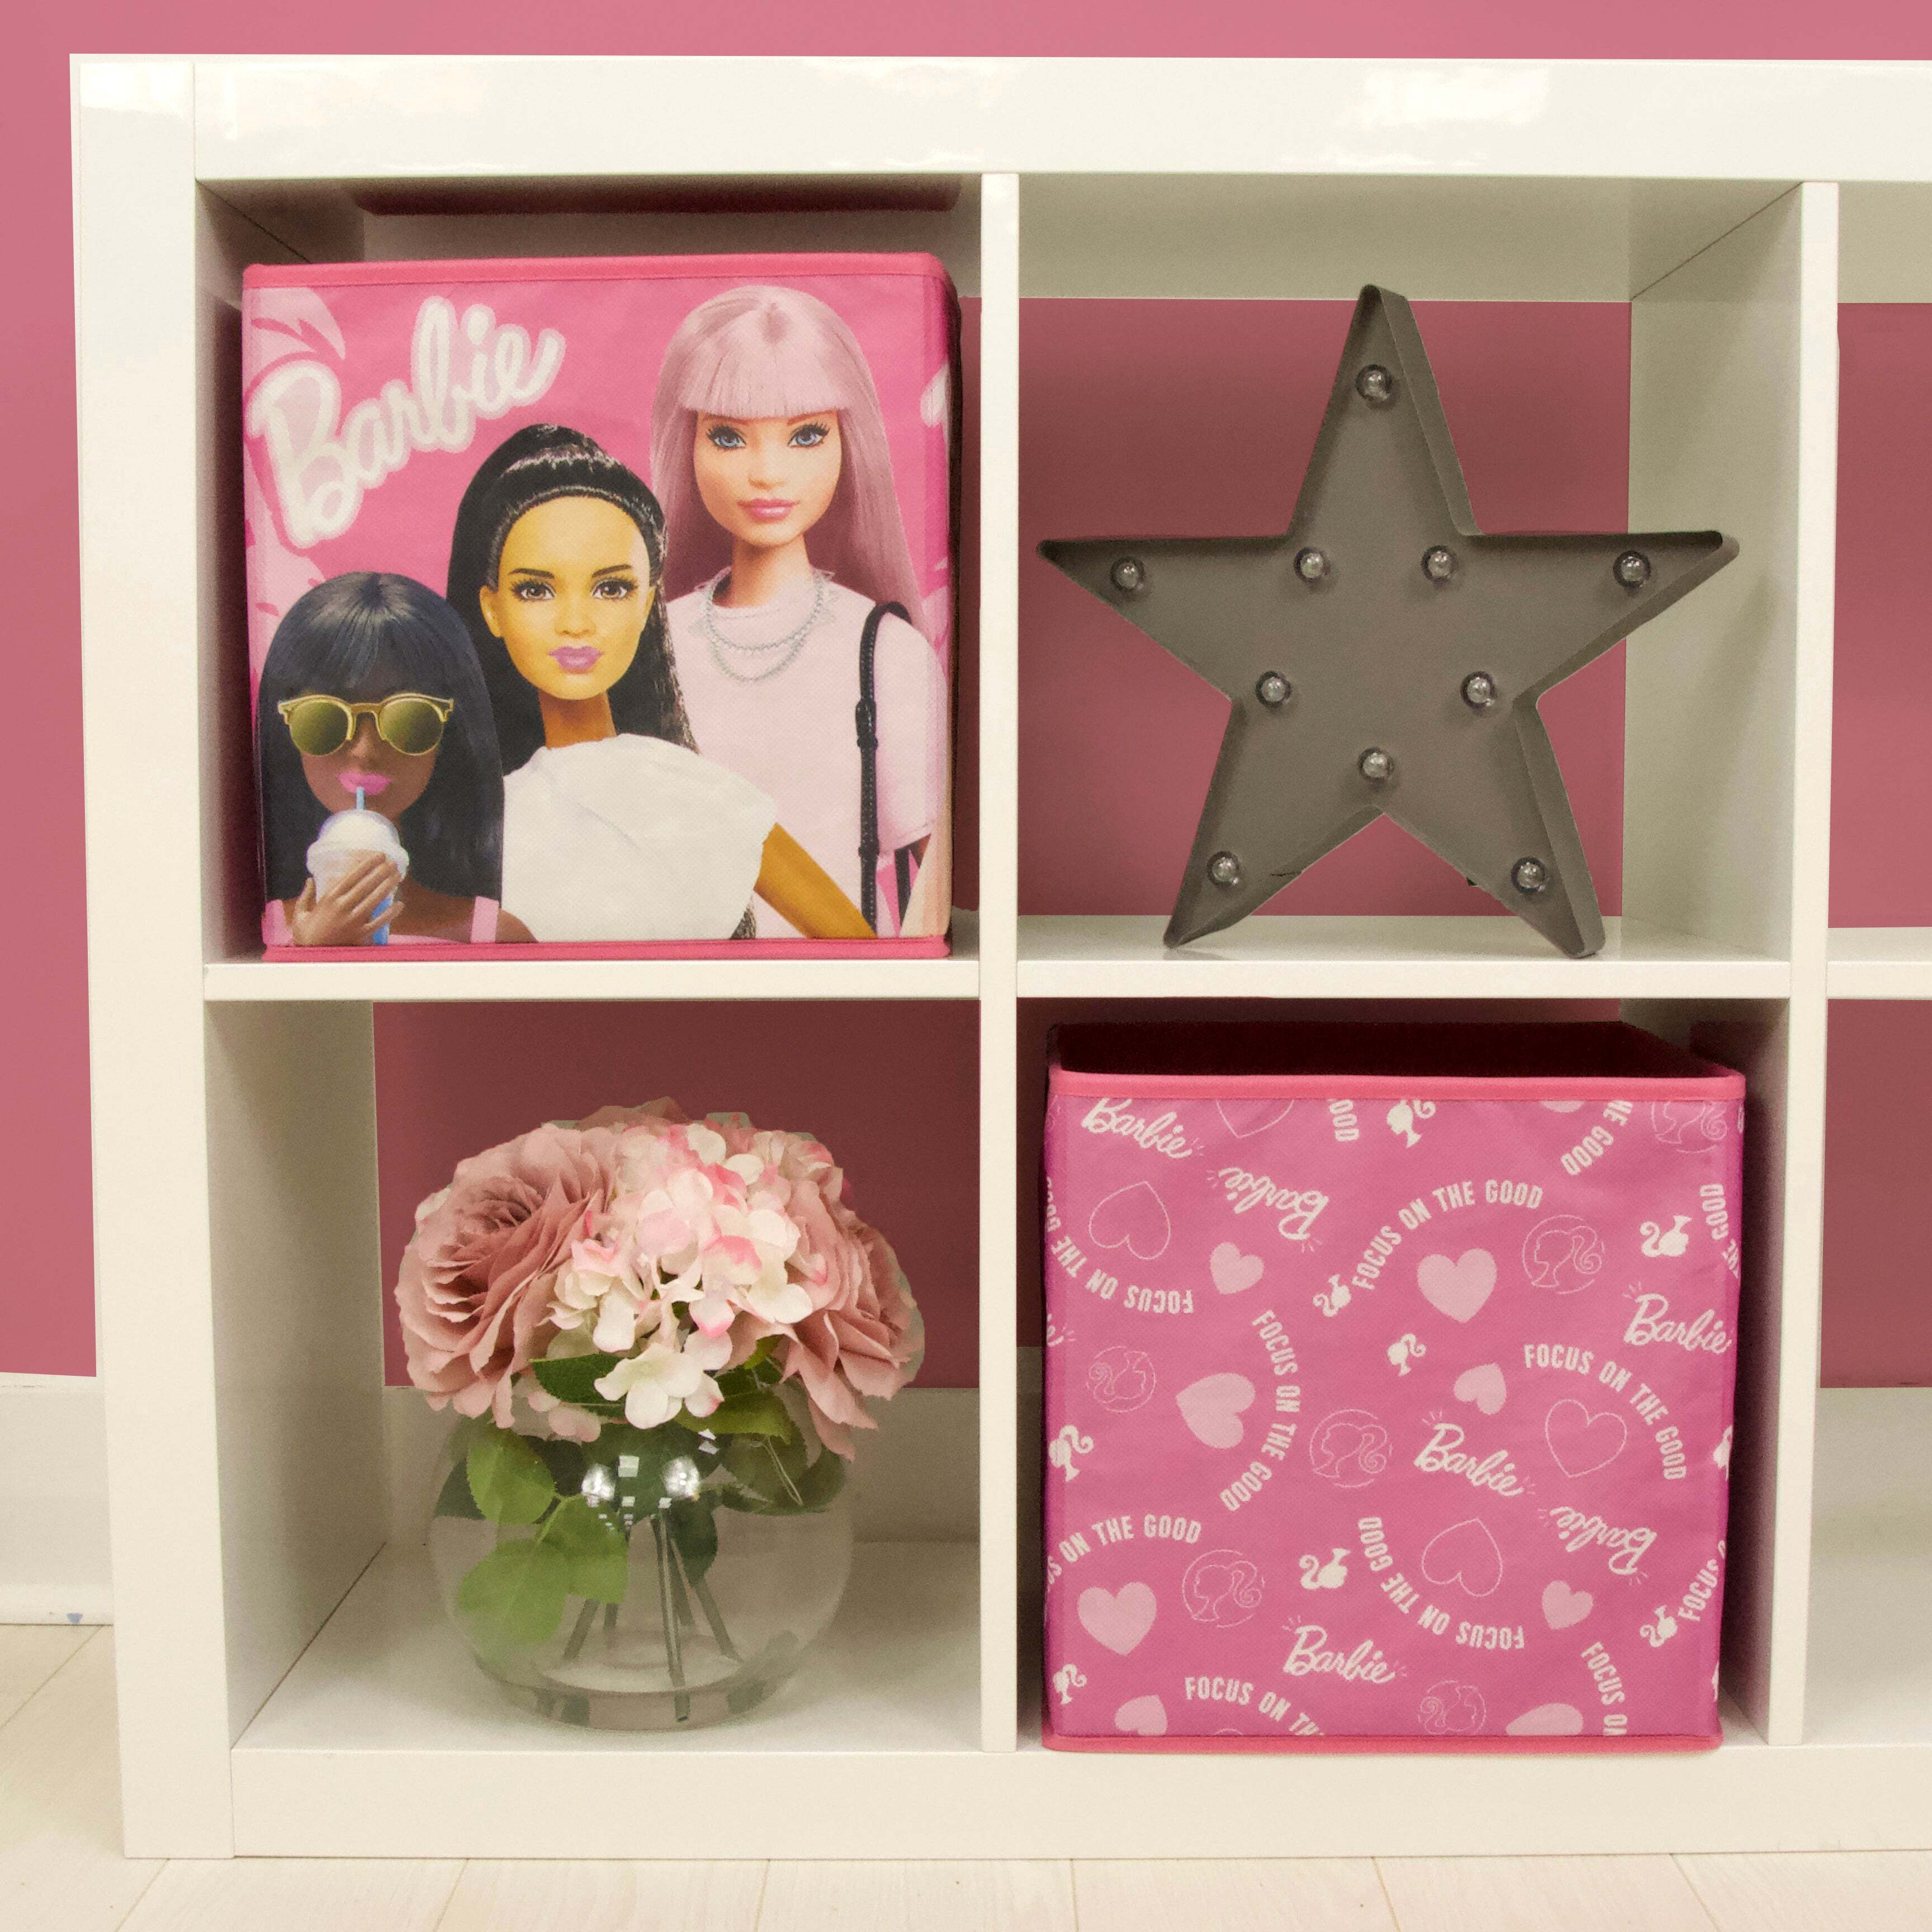 Barbie Pack of 2 Storage Cubes Pink